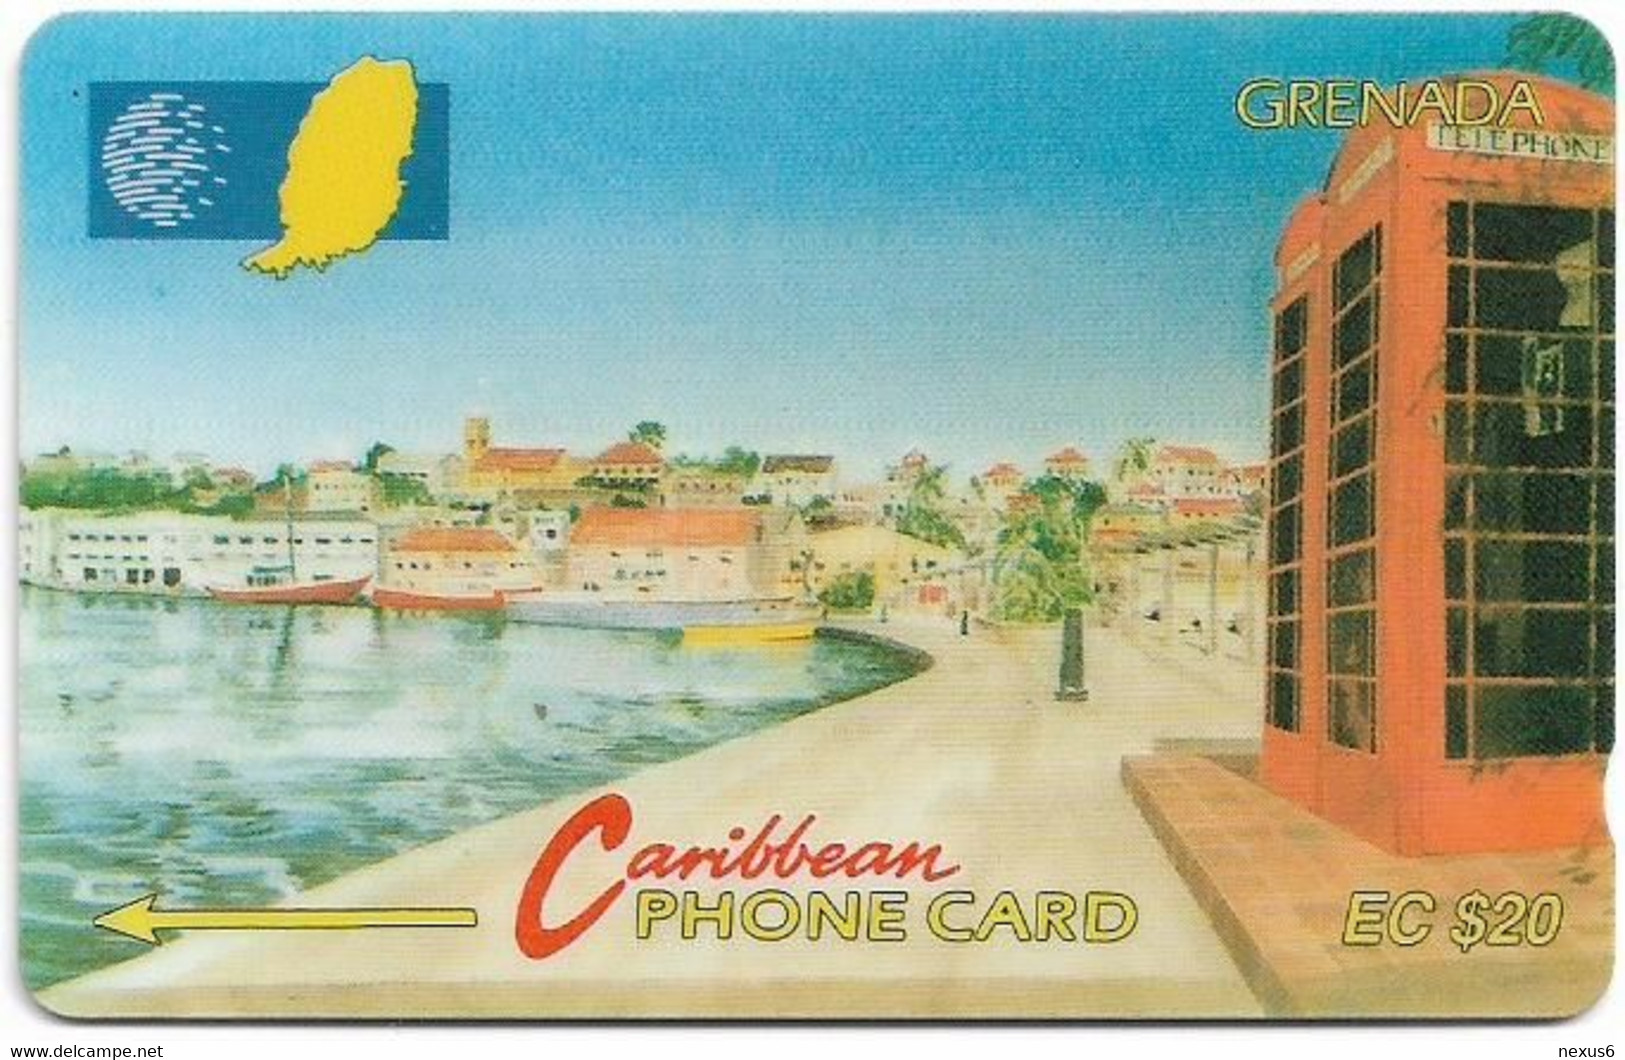 Grenada - C&W (GPT) - Carenage St. Georges - 8CGRB - 1994, 11.129ex, Used - Grenada